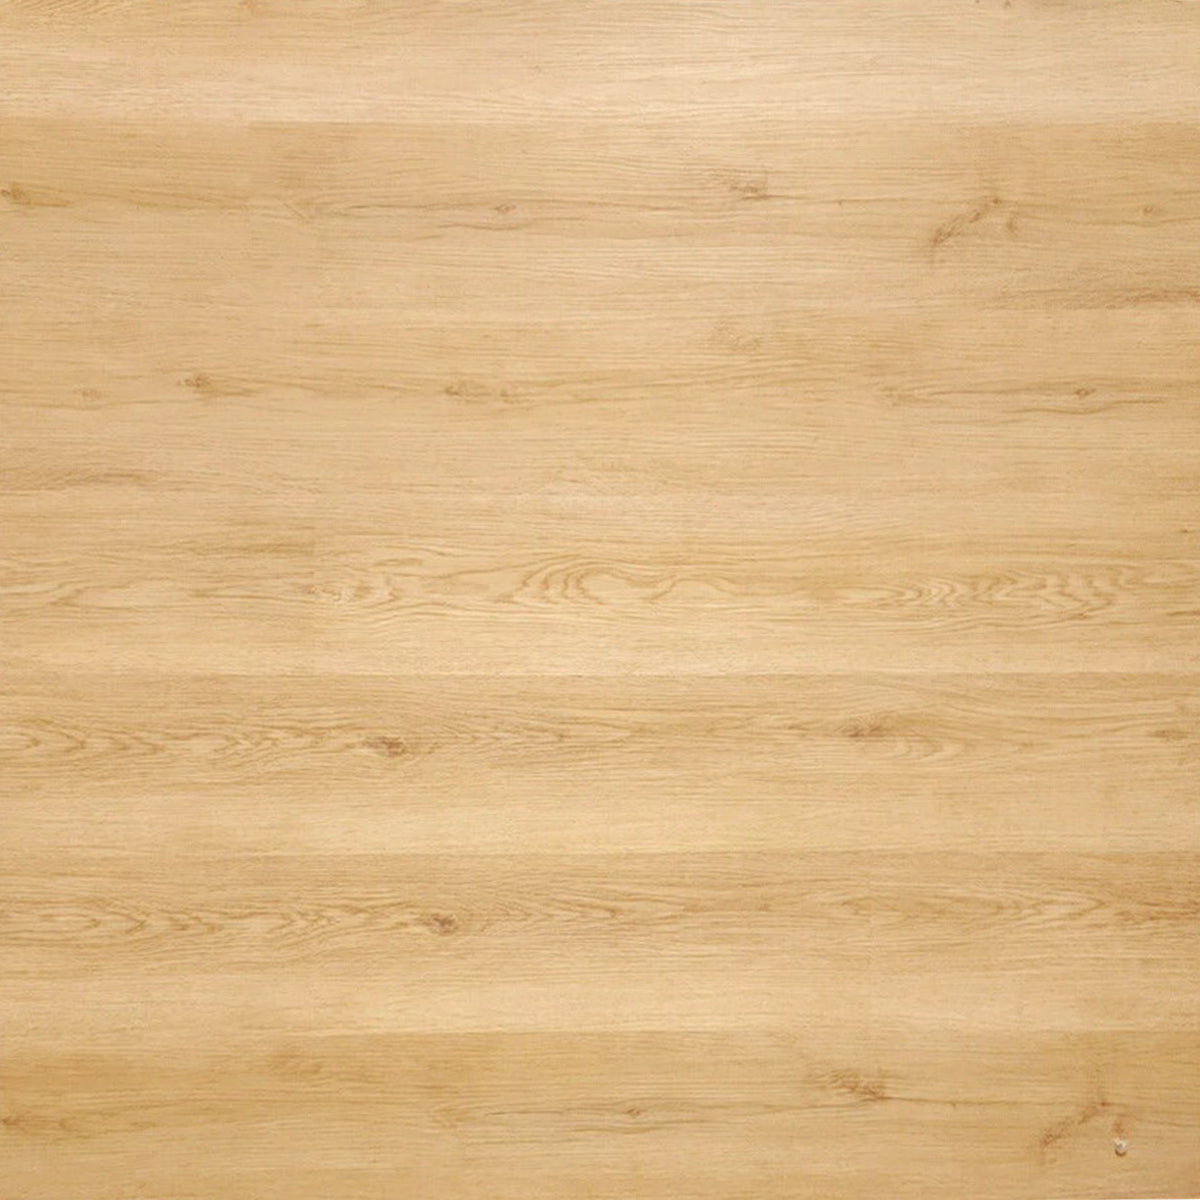 Thickness: 4 mm Bog Oak Veneer, For Furniture, Size: 8 X 4 Ft at